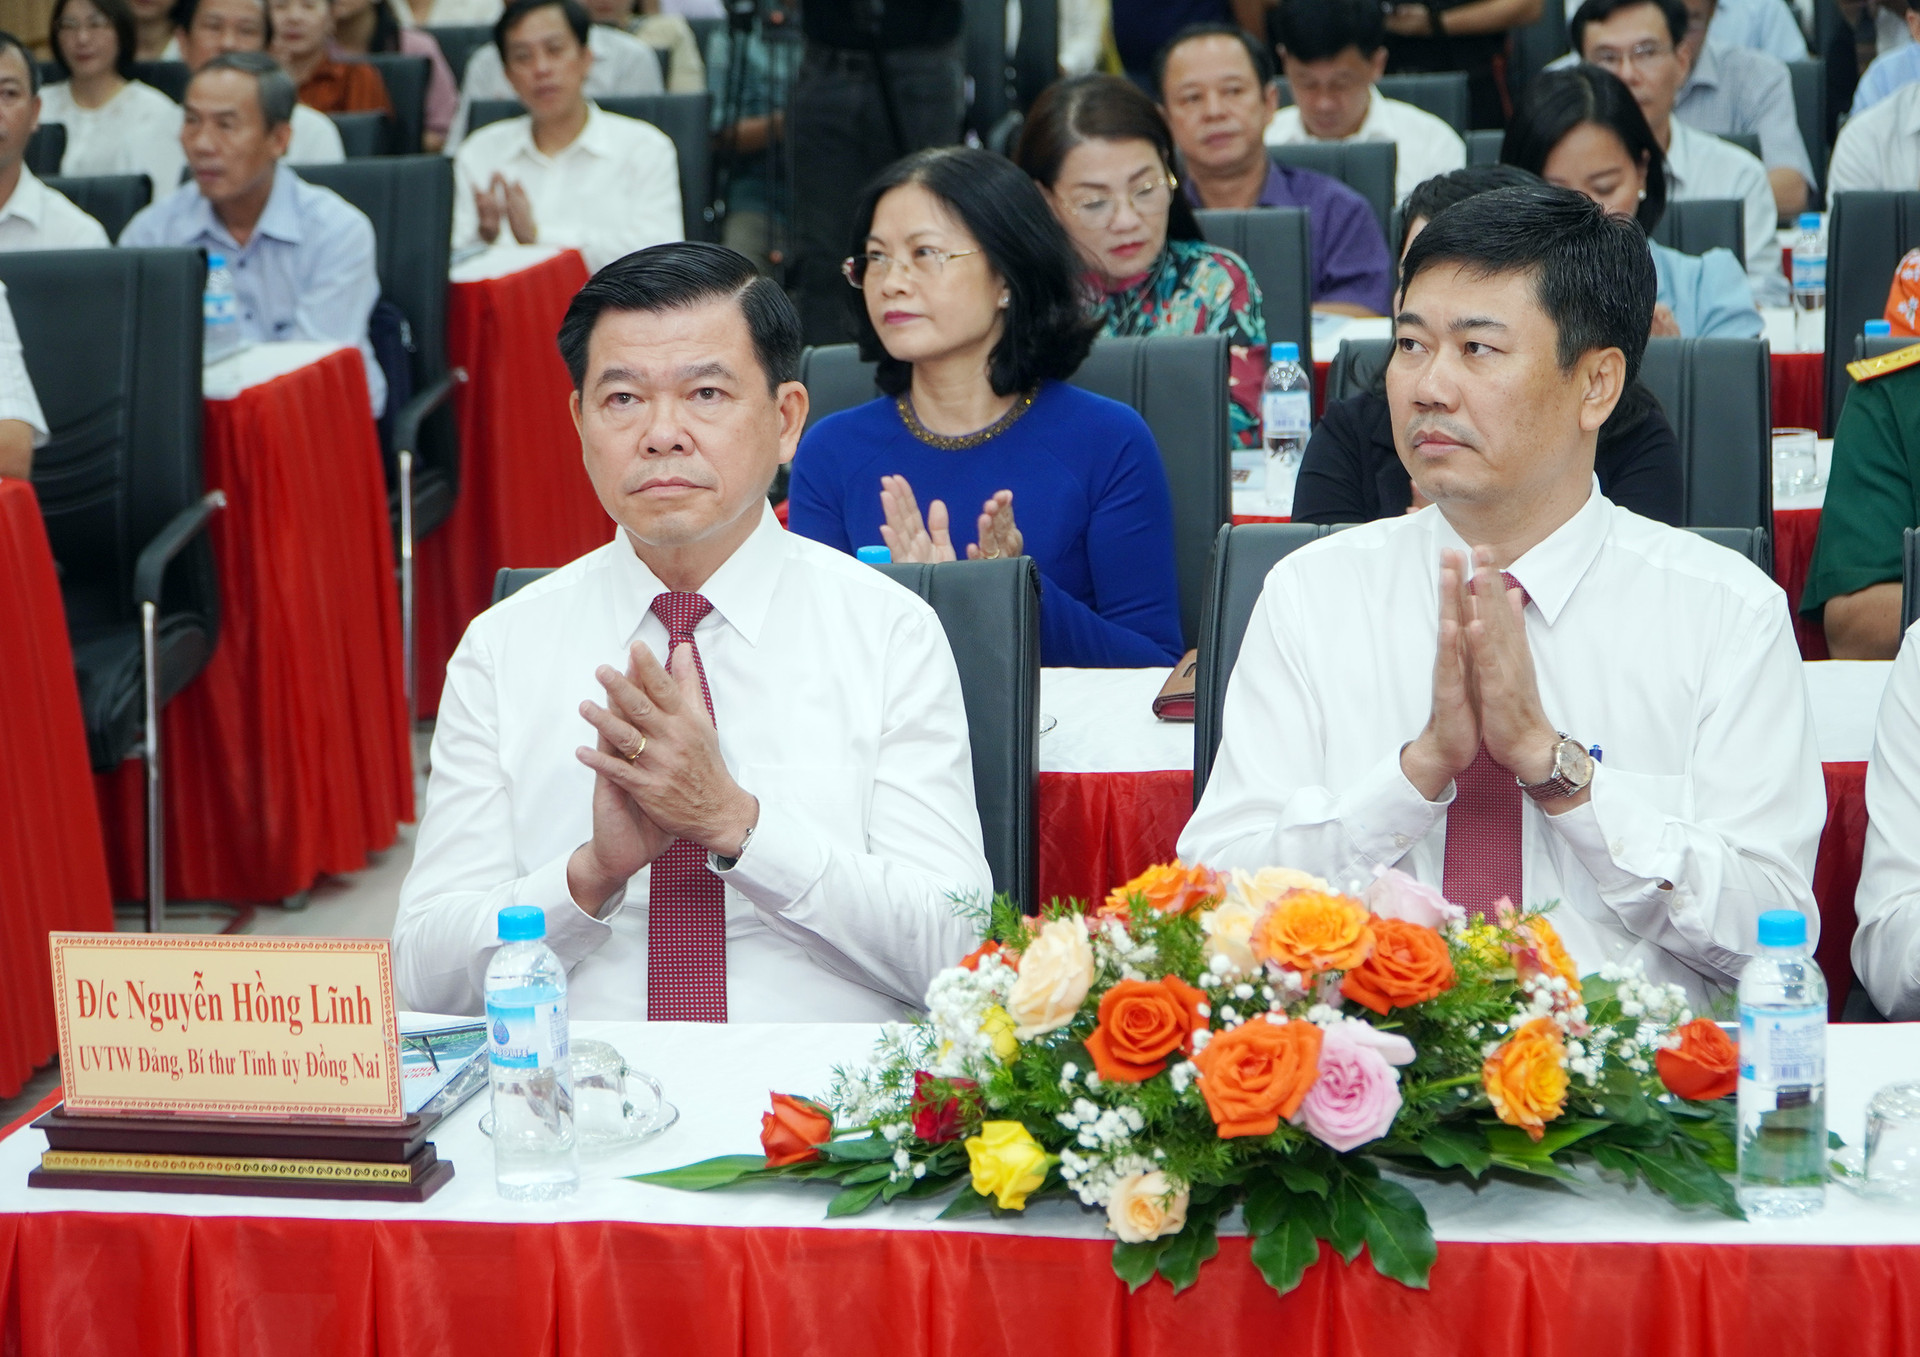 Ông Nguyễn Hồng Lĩnh, Ủy viên Trung ương Đảng, Bí thư Tỉnh ủy Đồng Nai tham dự buổi Lễ.